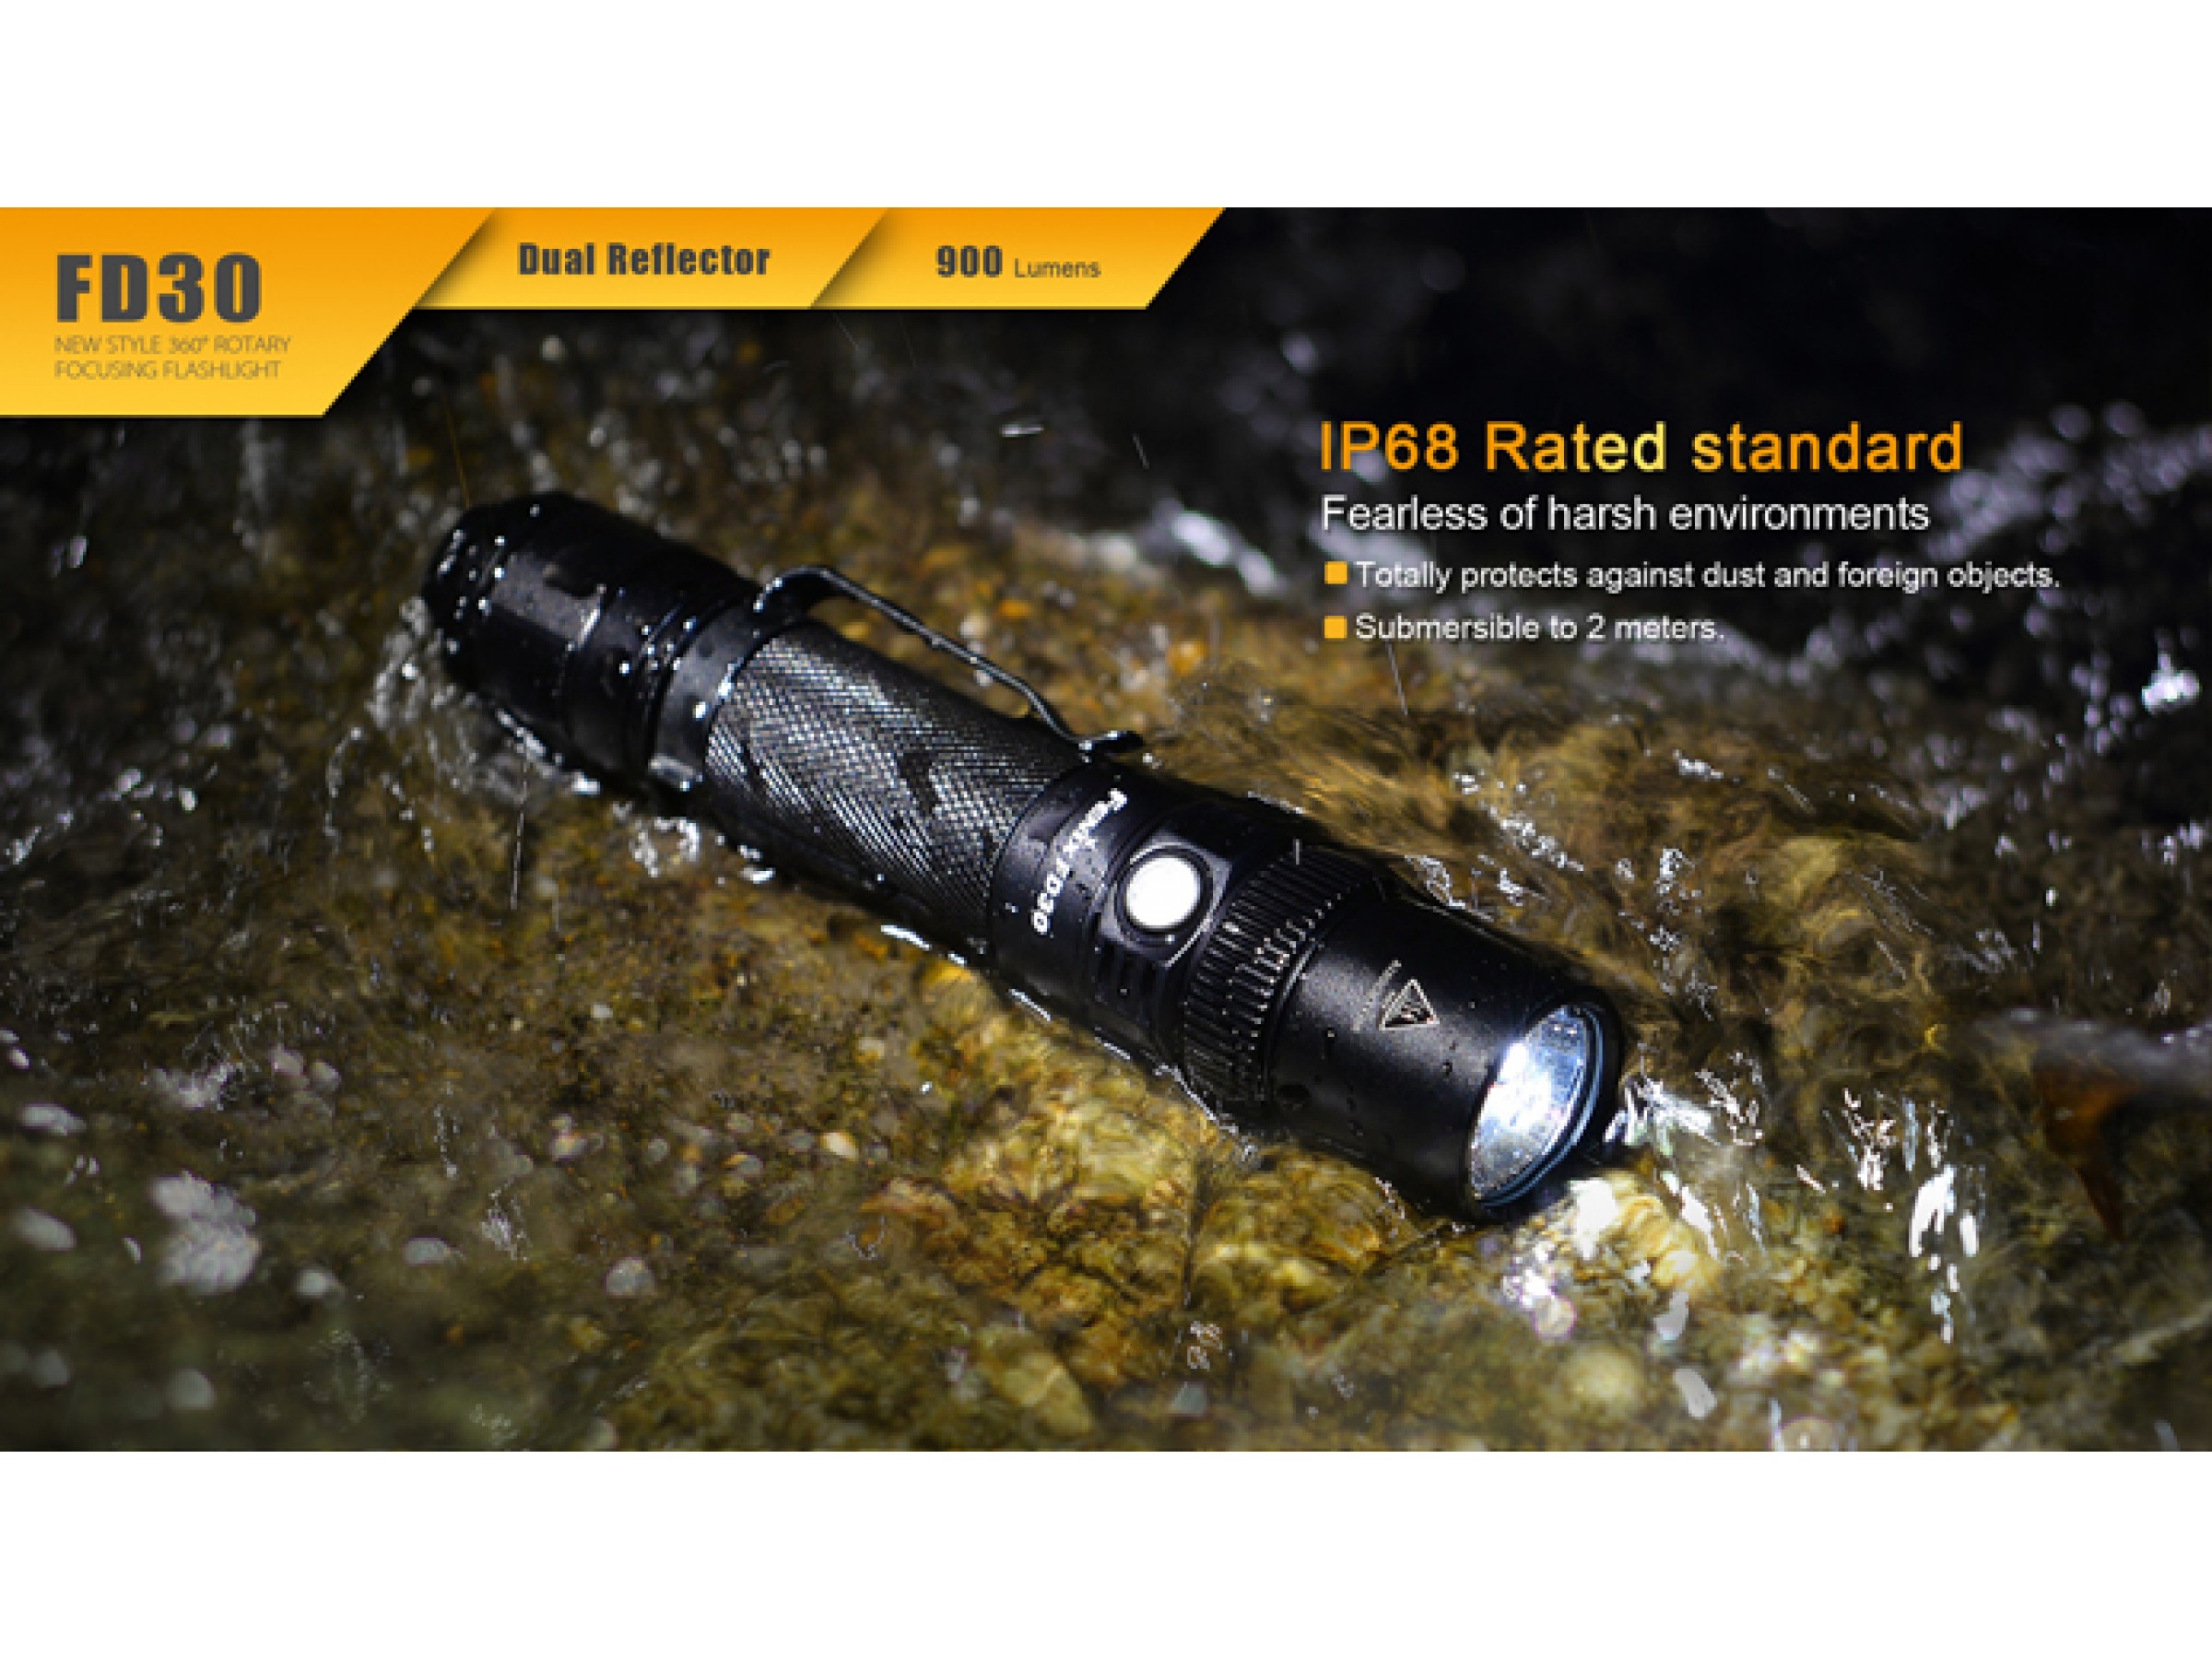 Fenix FD30 flashlight